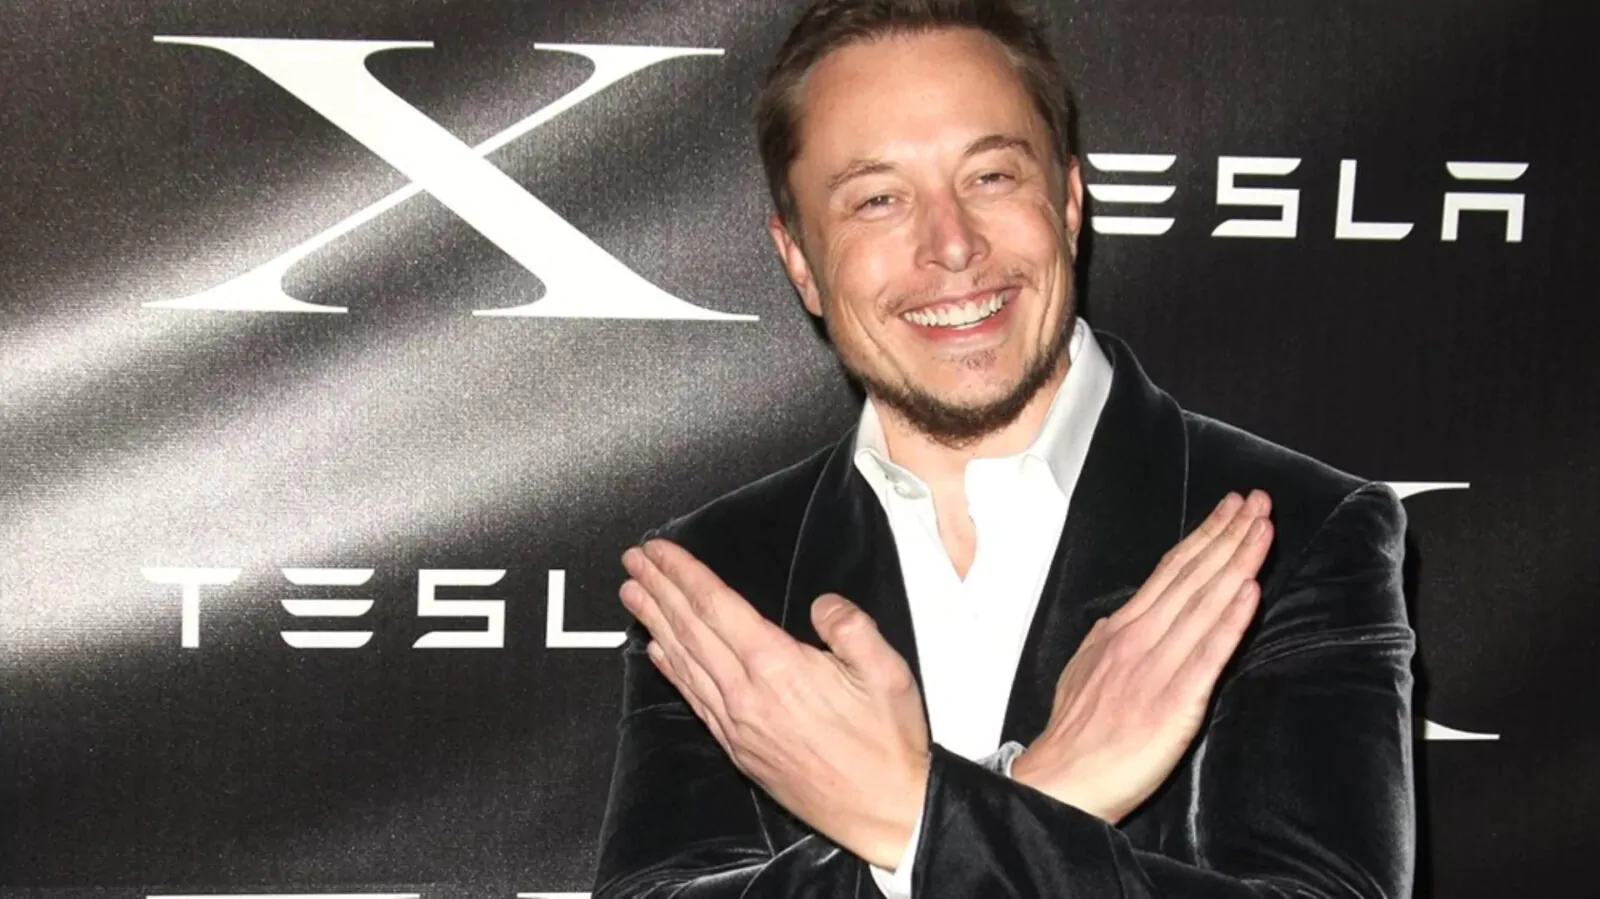 x corp | Elon Musk | บอกลานกฟ้าบน Twitter เปลี่ยนไอคอนเป็น X แทนแล้ว